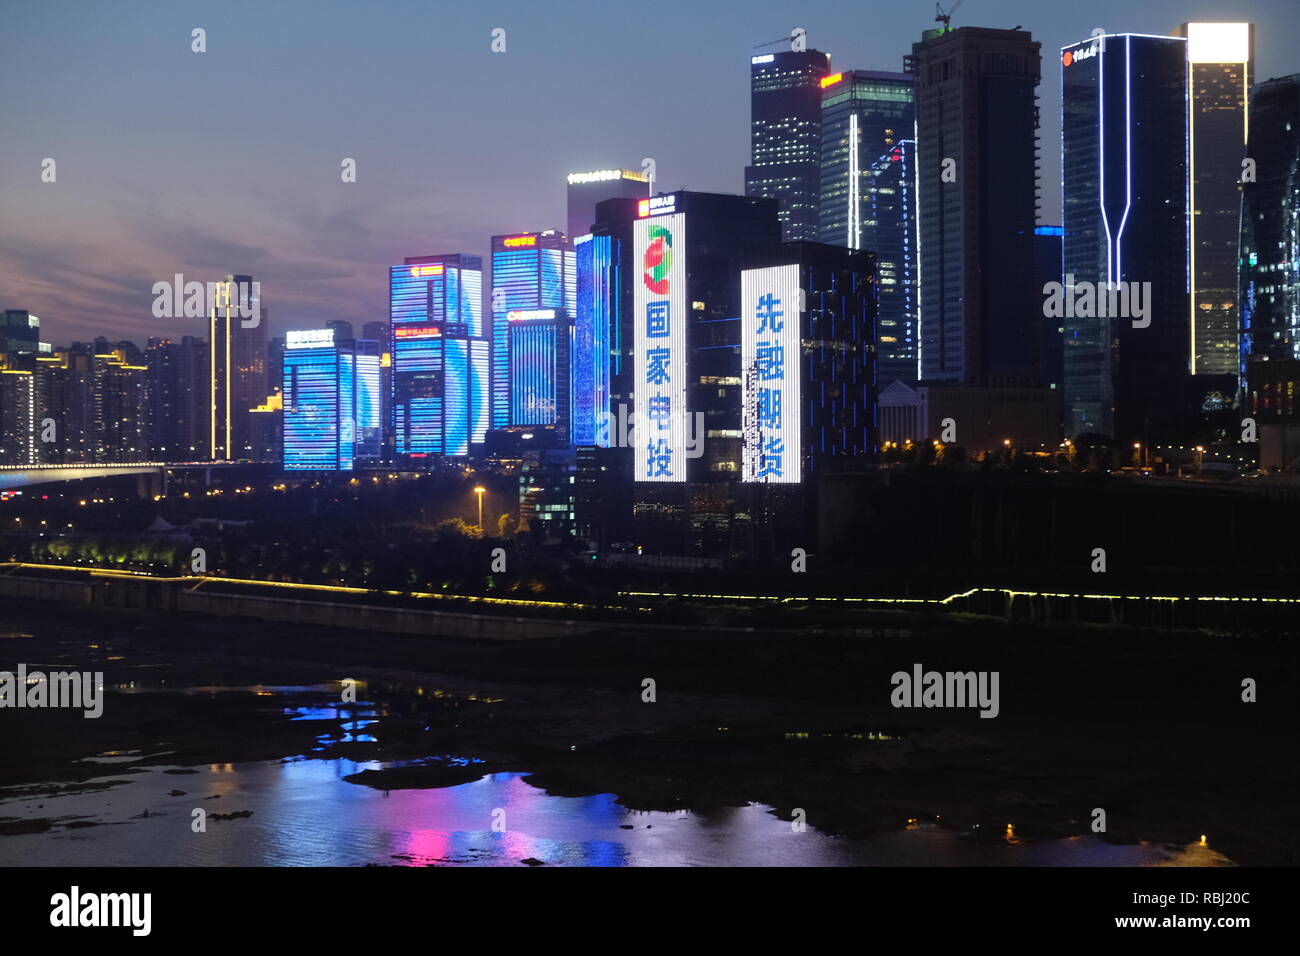 Toits de maisons du quartier financier de la mégapole chinoise Chongqing Banque D'Images